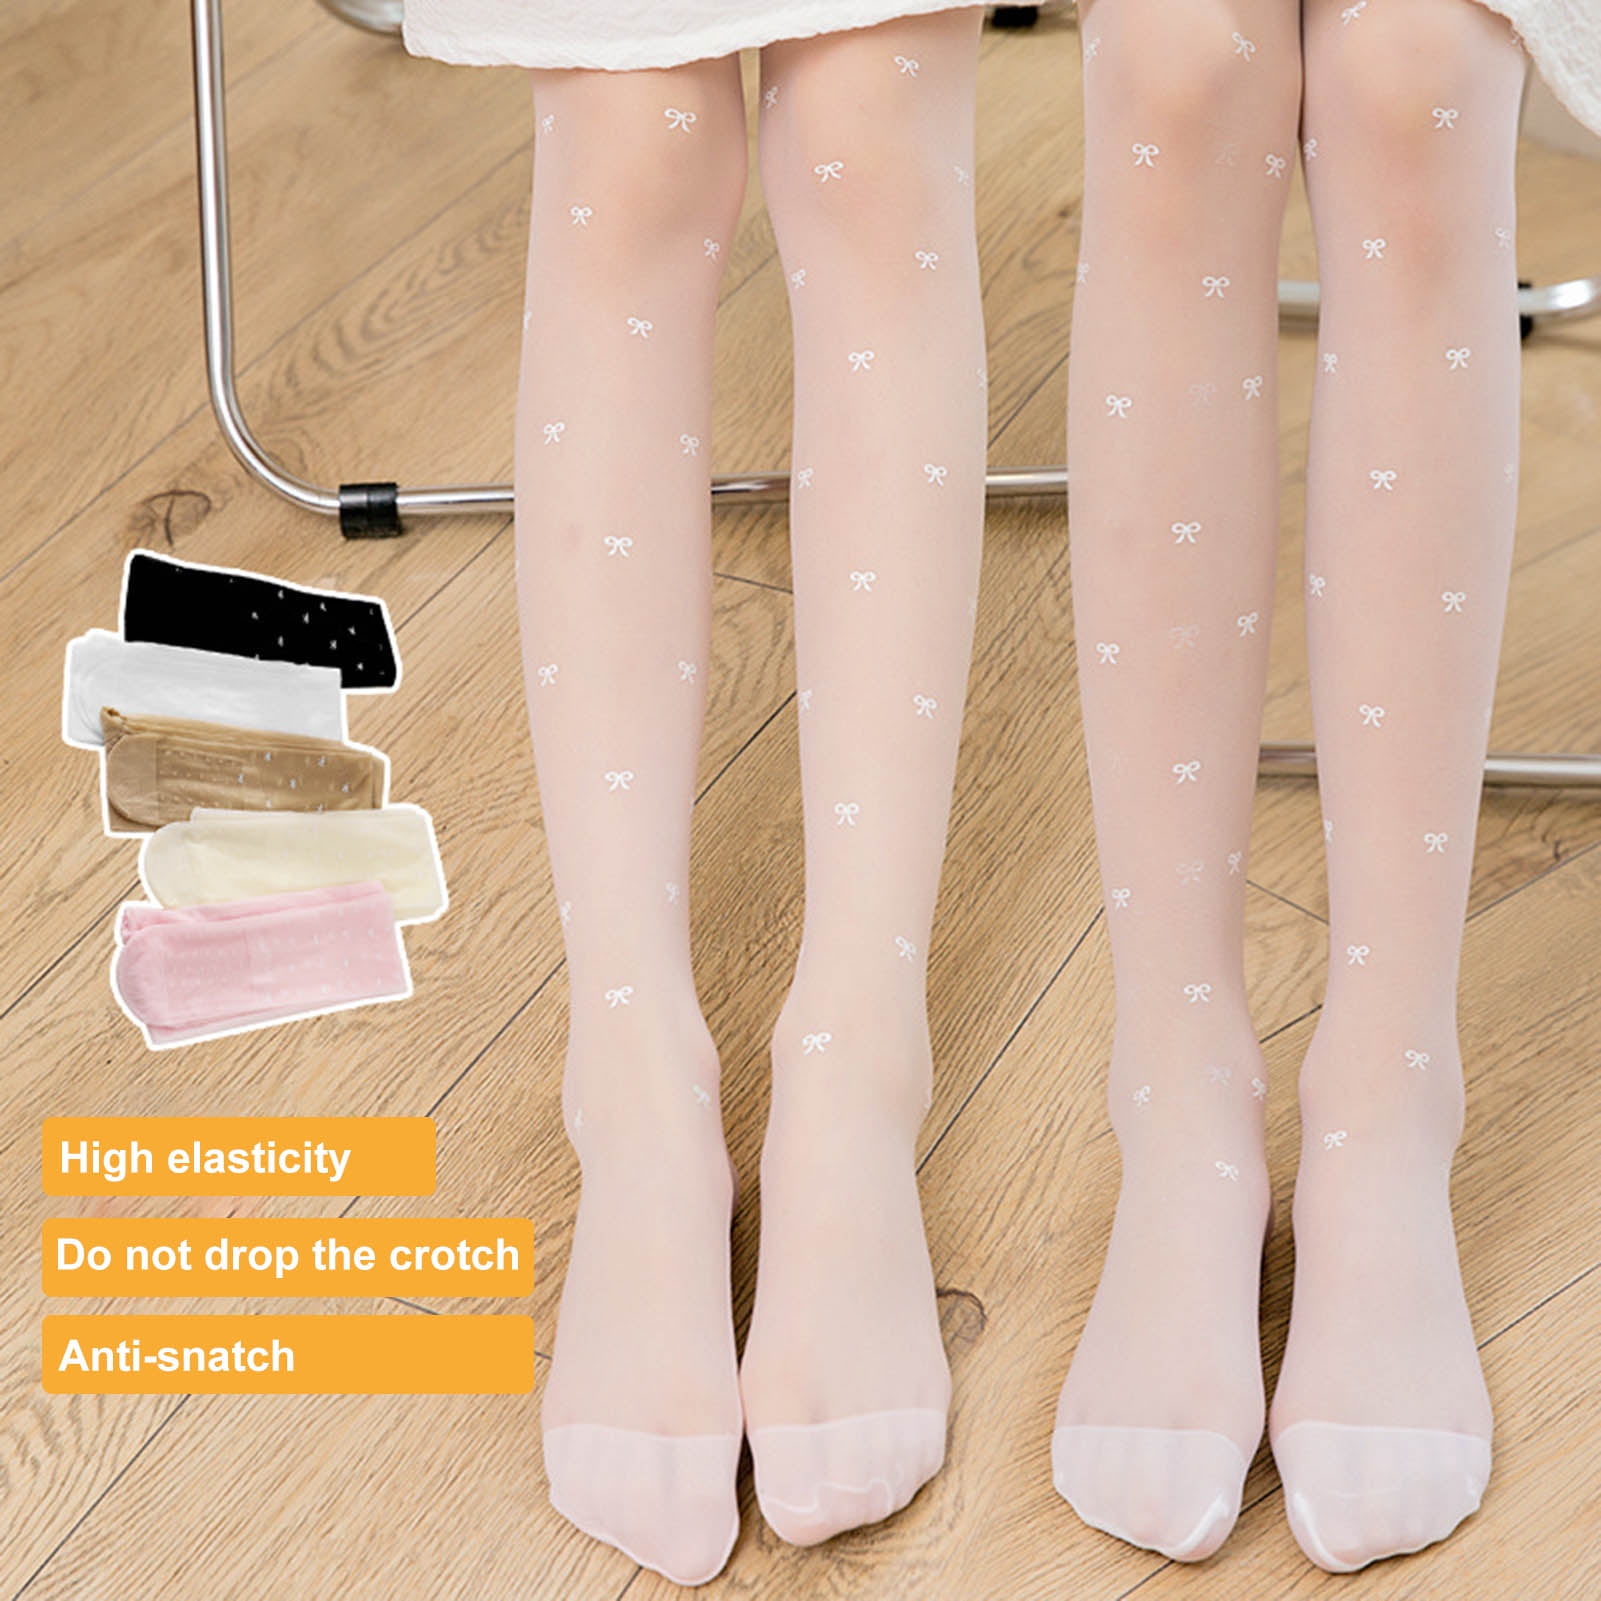 Cute Girls Baby Kids Toddlers Cotton Pantyhose Pants Stockings Socks Hose  Ballet 